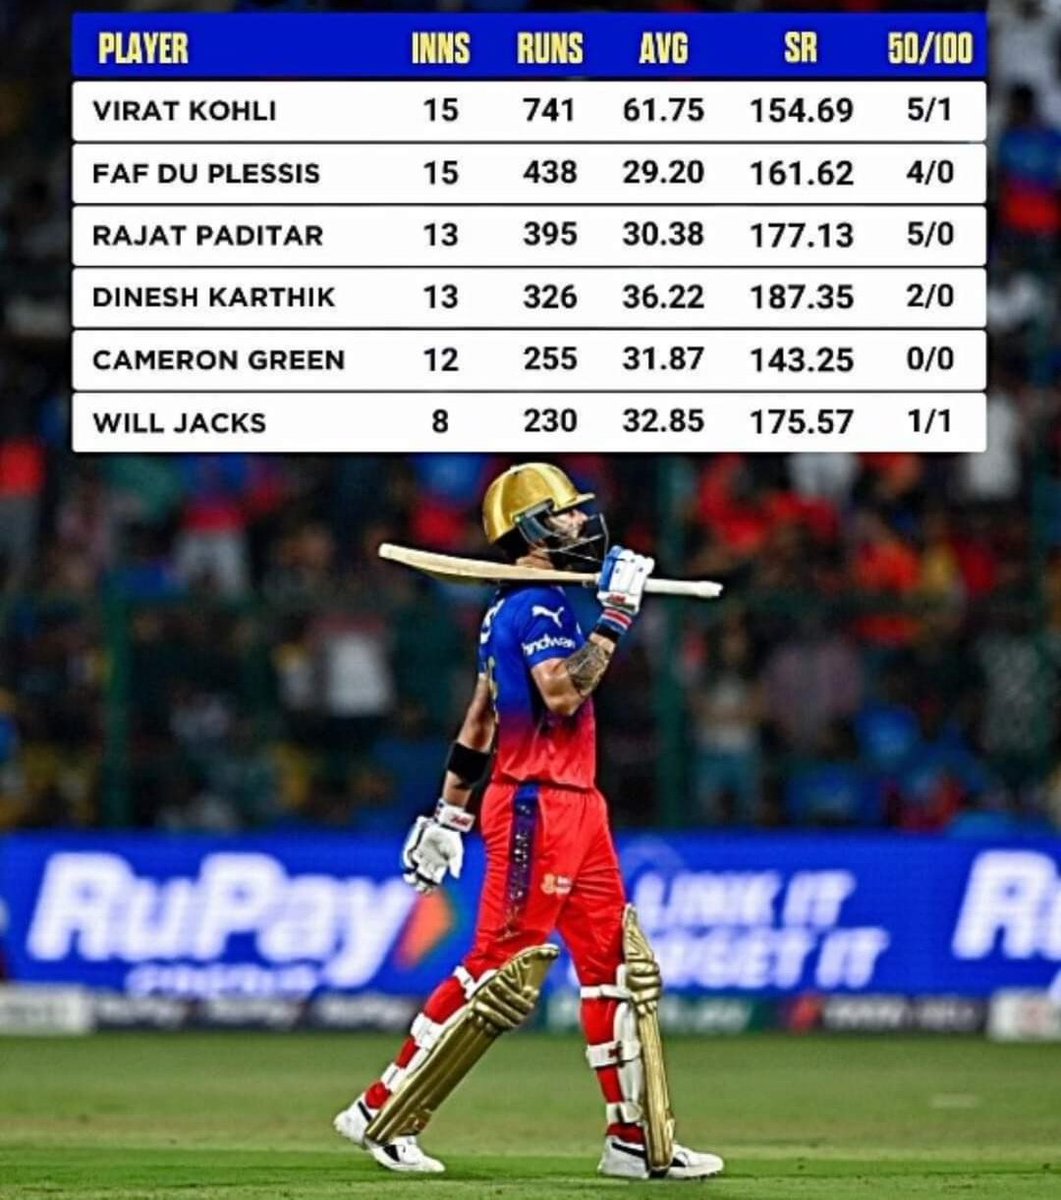 Most runs for RCB in IPL 2024! 🏏
@BluntIndianGal
#ipl2024 #ipl #viratkohli #kingkohli #fafduplessis #rajatpatidar #CameronGreen #willjacks #rcb